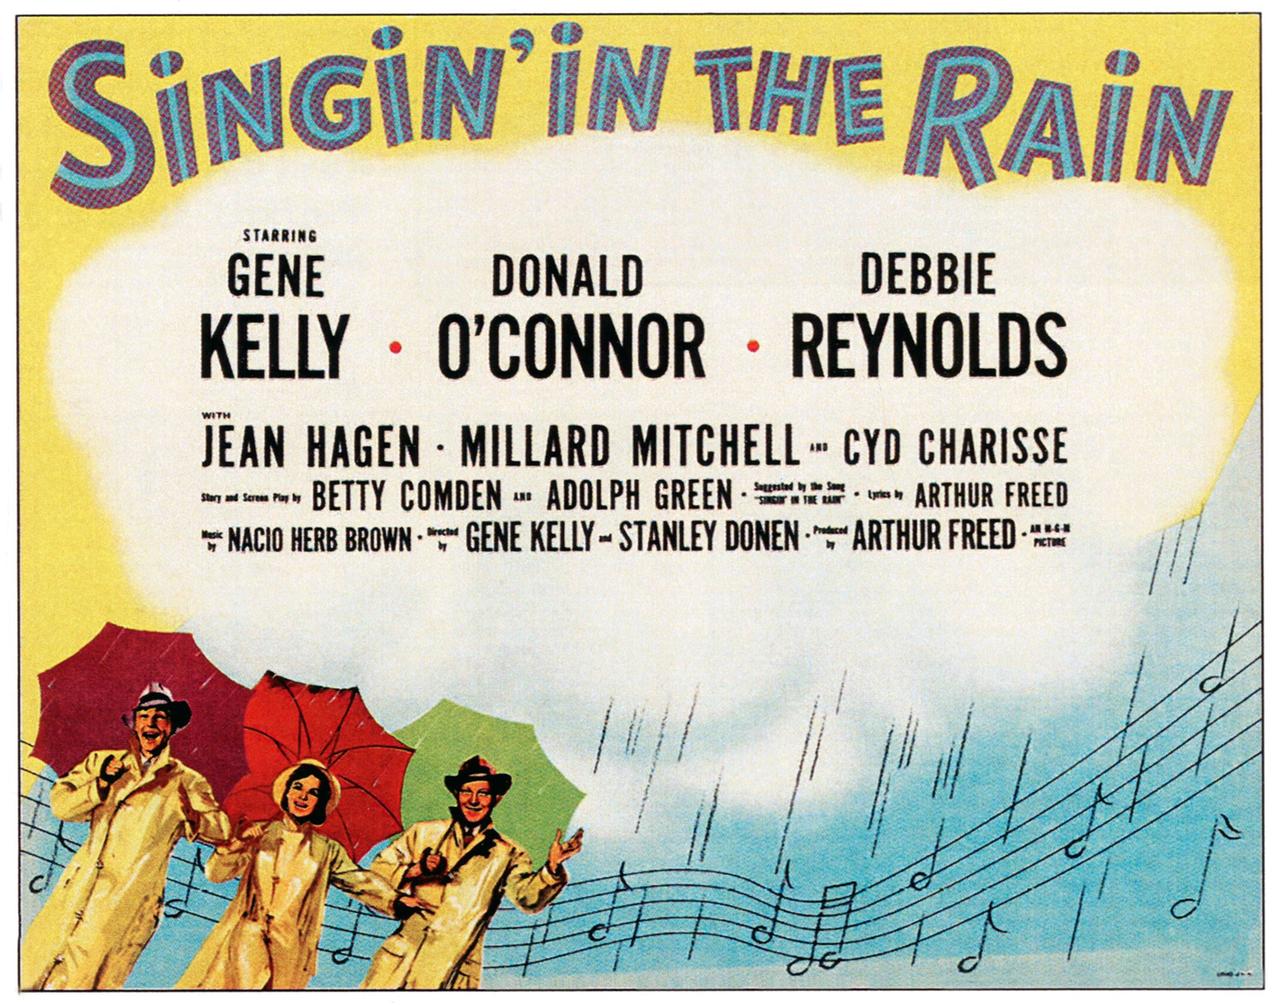 "Singin’ in the Rain" - Gene Kelly, Debbie Reynolds, Donald O'Connor auf dem Originalplakat von 1952